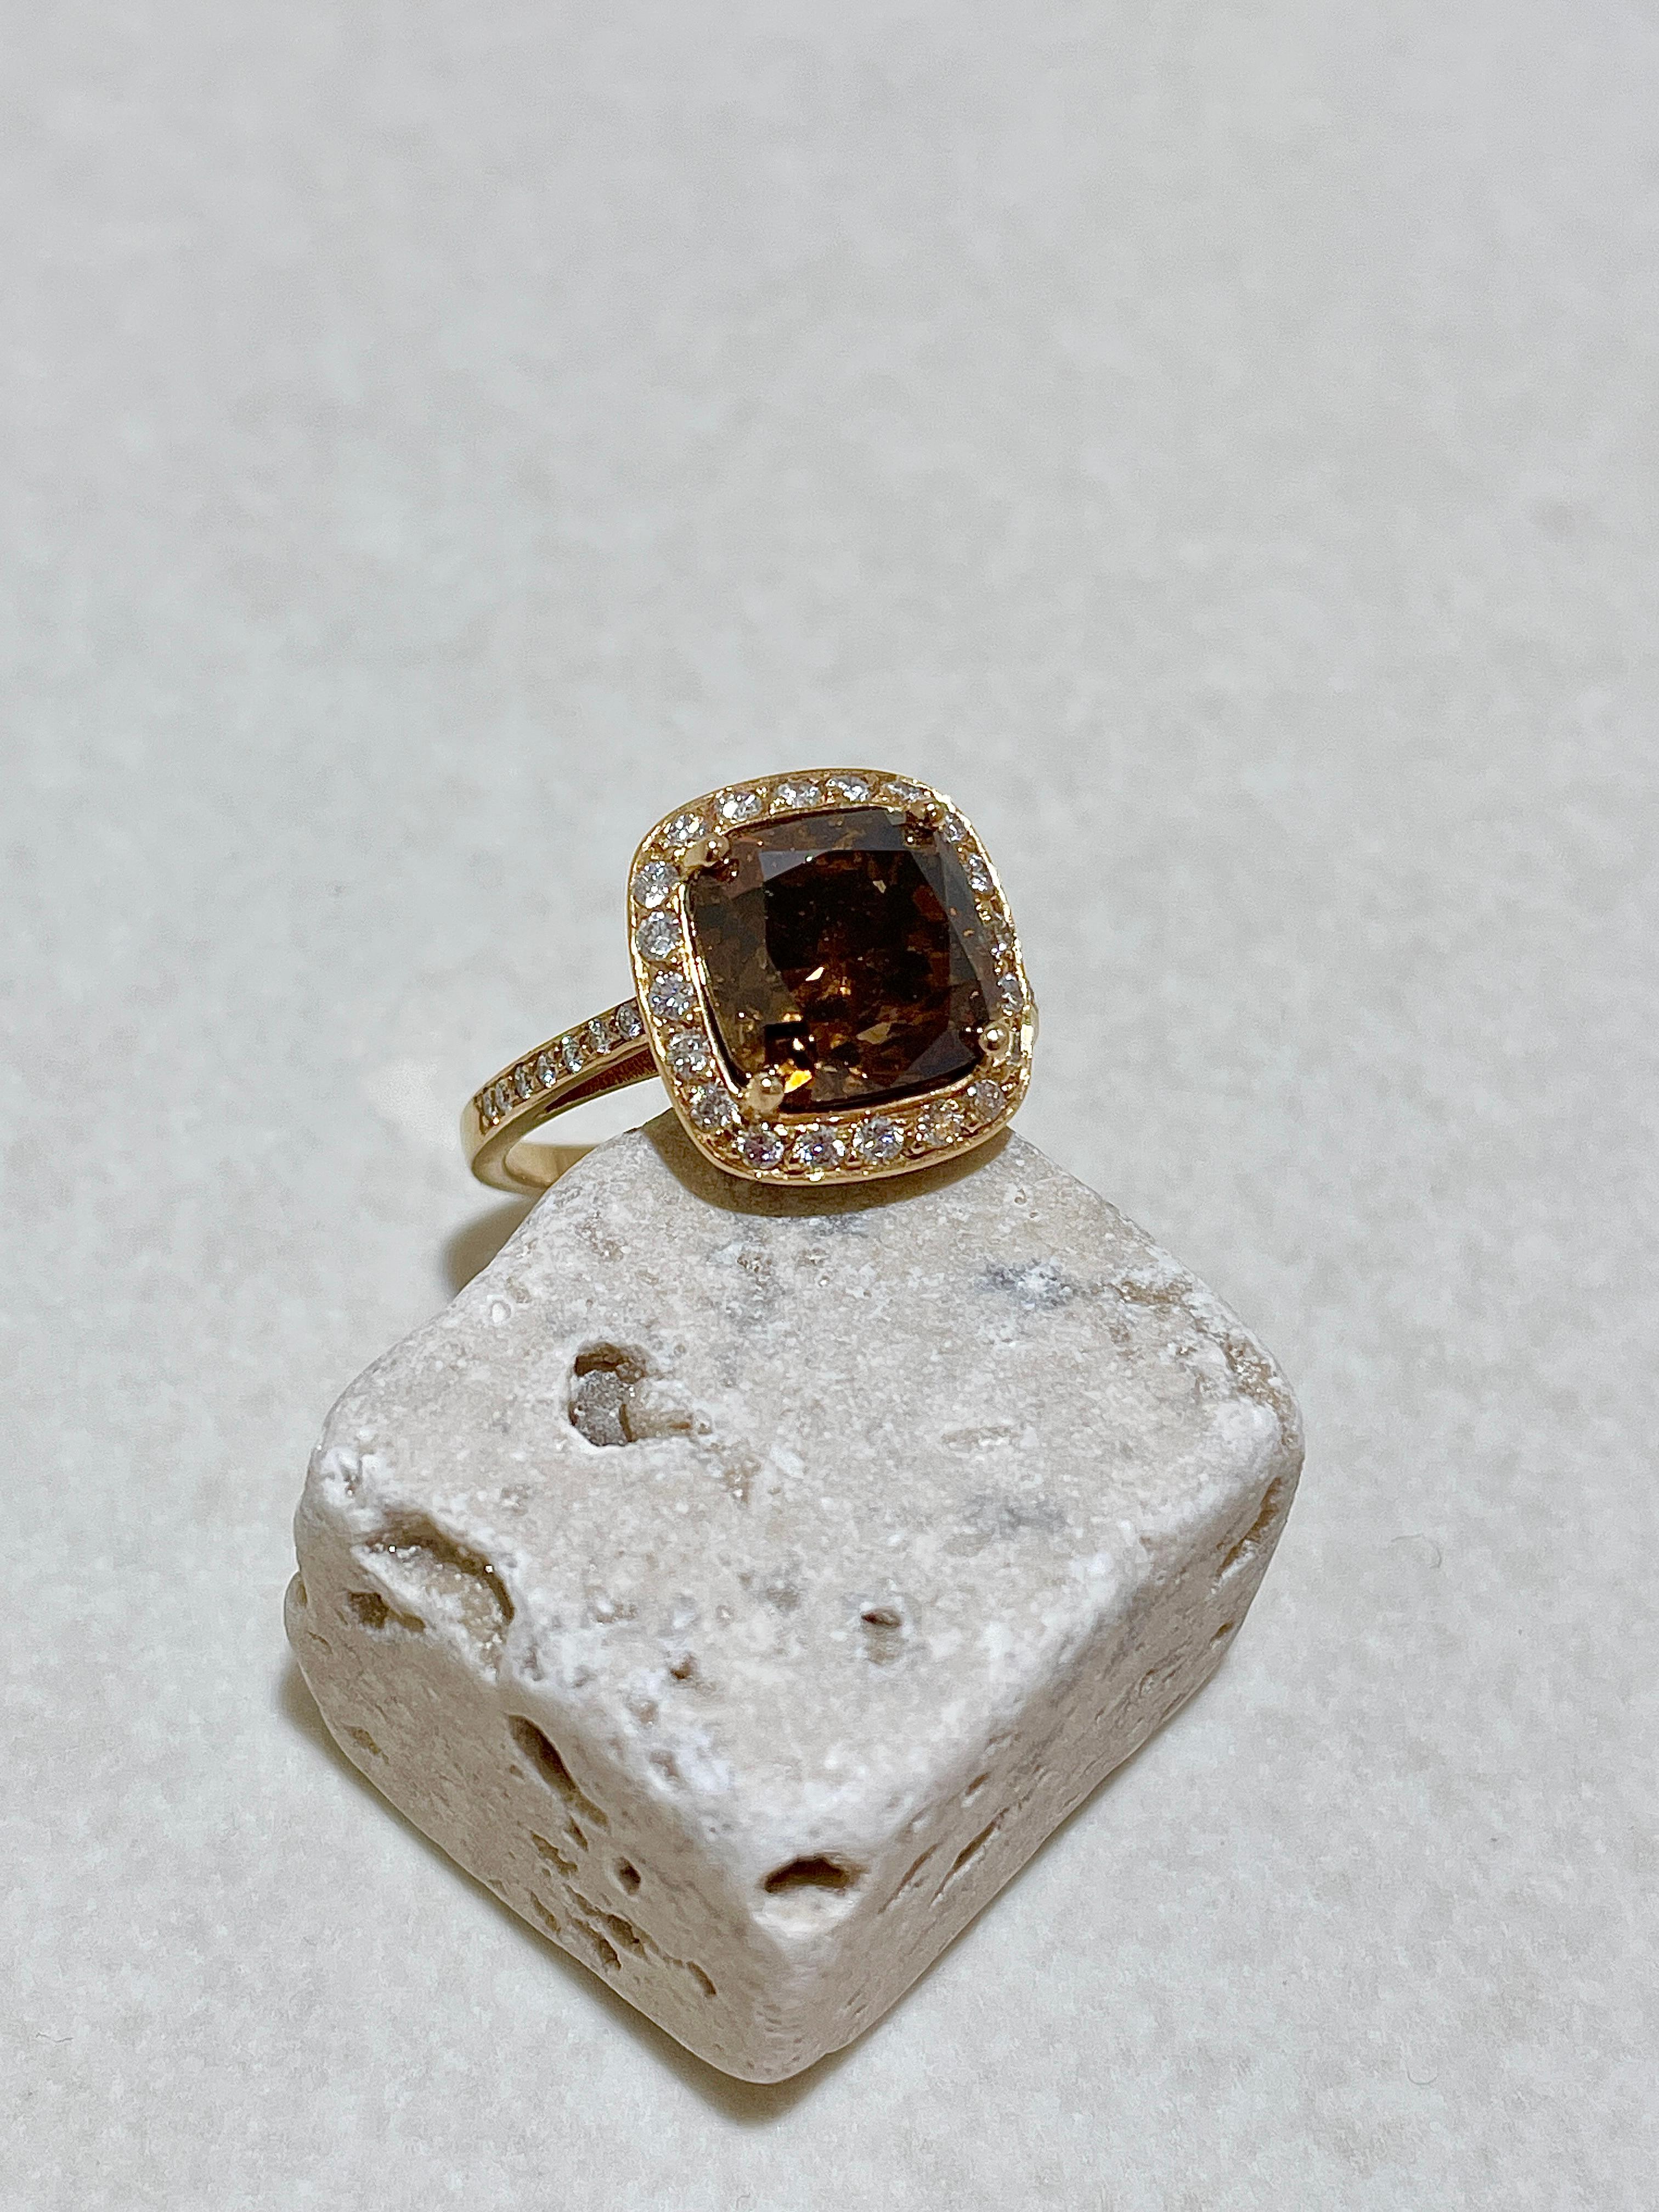 Der Ring aus 18kt Gelbgold mit einem unbehandeltem Braunen Diamanten im Kissenschliff hat 5,5 Karat und wird mit einem IGI Zertifikat geliefert. Umrandet ist der Braune Diamant mit insgesamt 35 weißen Brillanten 0,41ct TW/si. Die Karat des Braunen